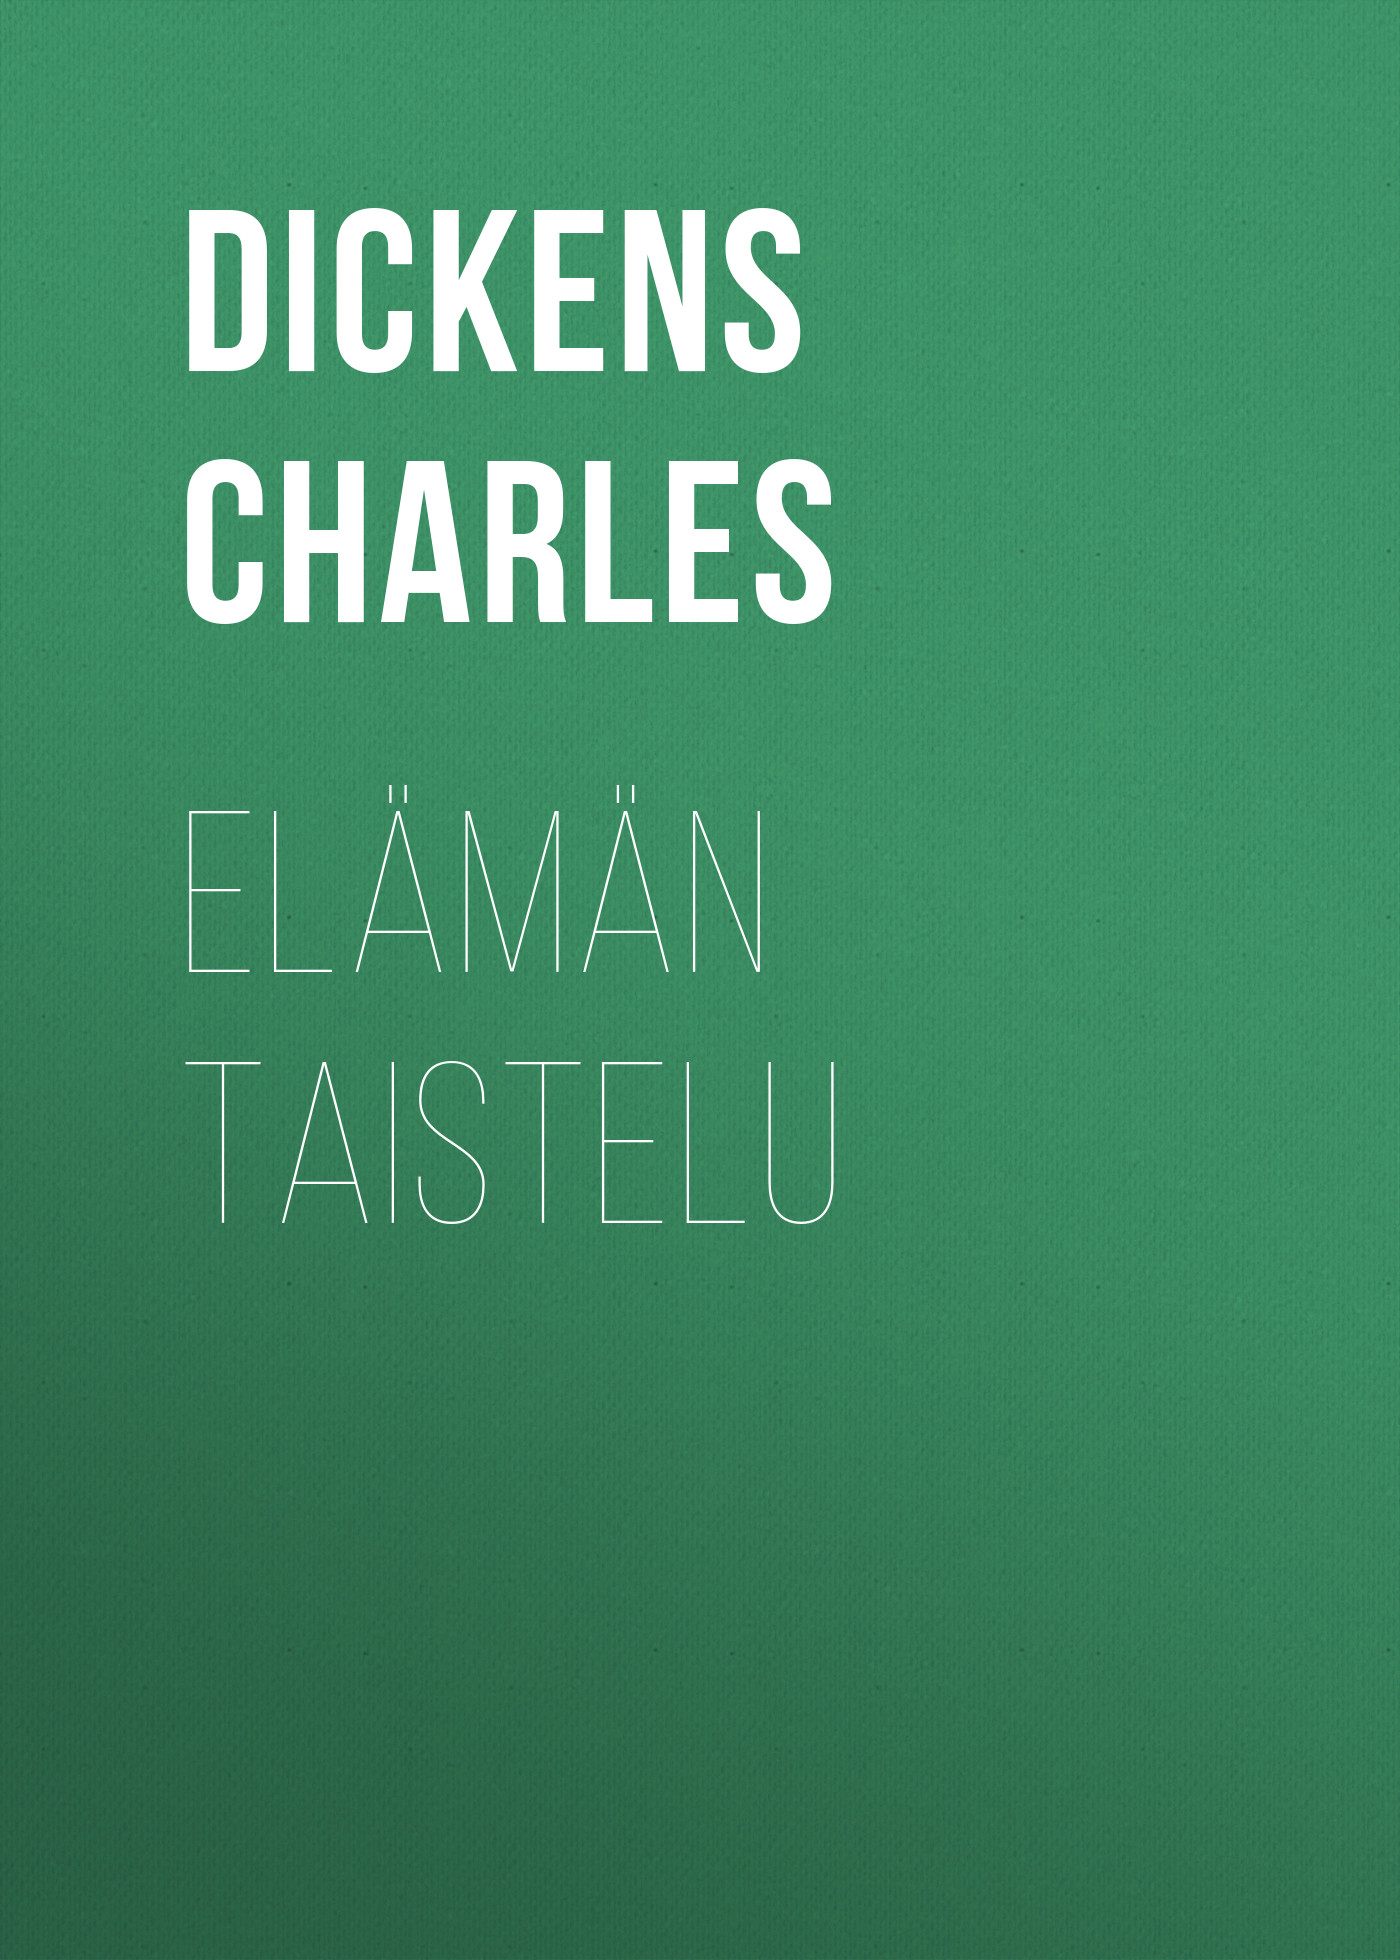 Книга Elämän taistelu из серии , созданная Charles Dickens, может относится к жанру Зарубежная старинная литература, Зарубежная классика. Стоимость электронной книги Elämän taistelu с идентификатором 24548268 составляет 0 руб.